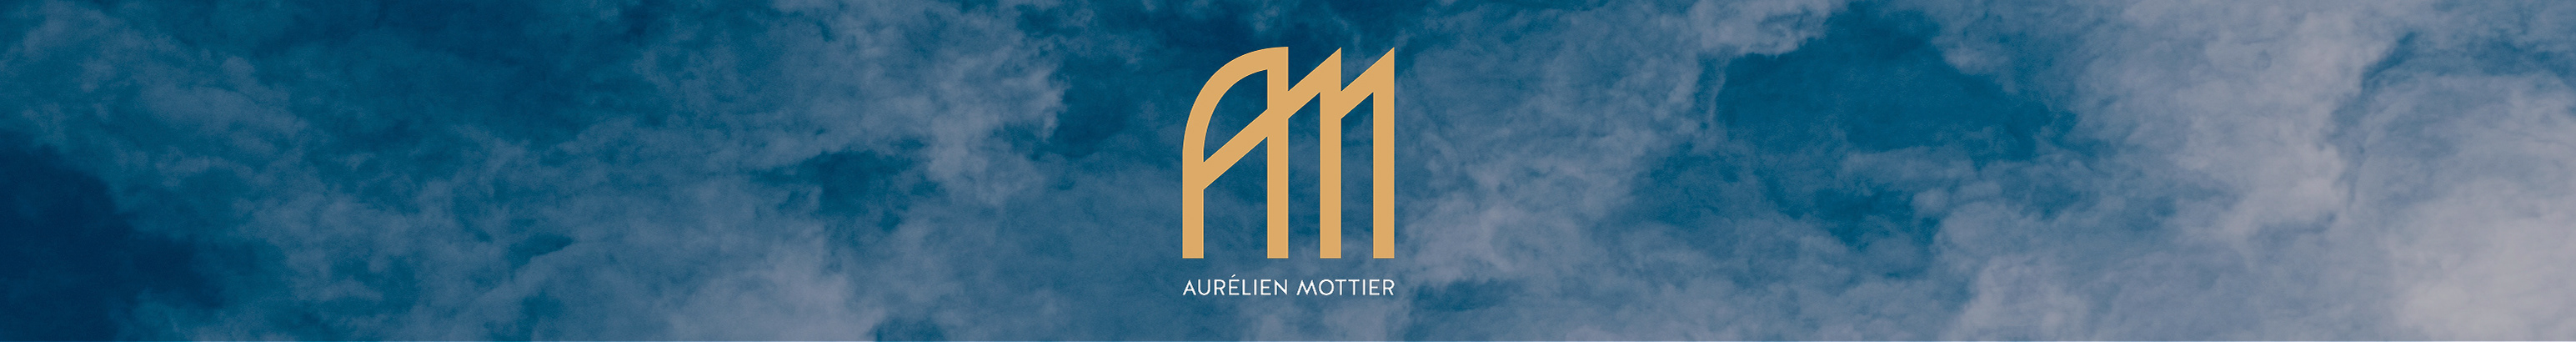 Aurélien Mottiers profilbanner